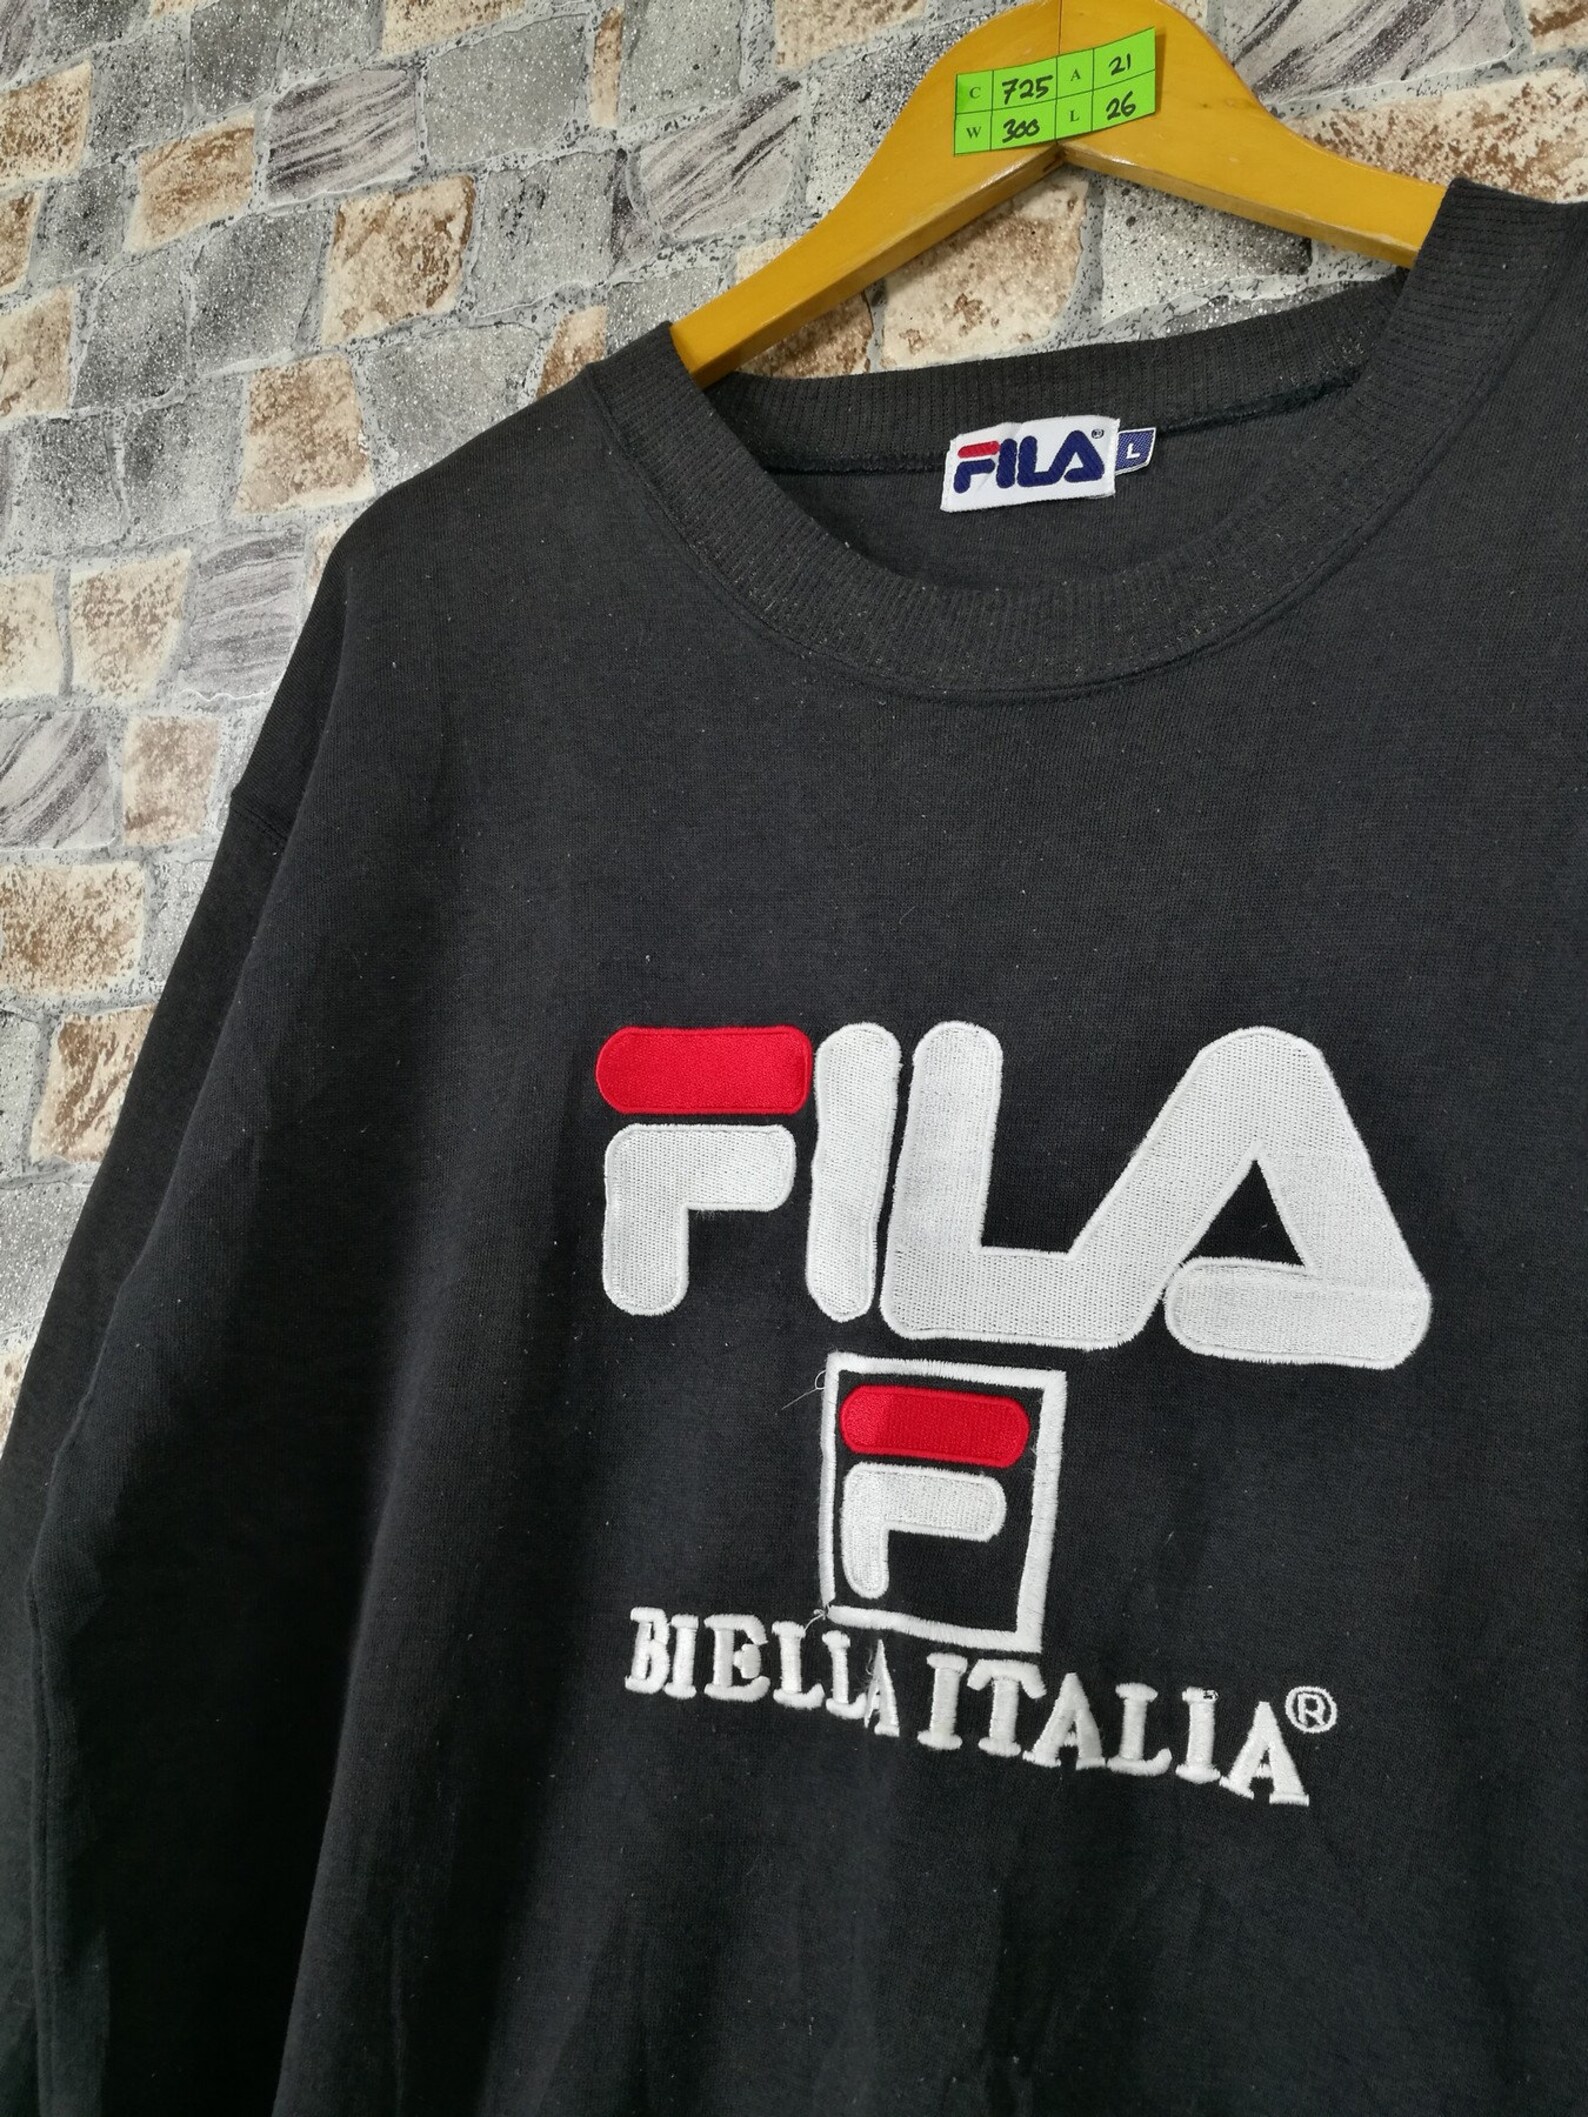 Vintage Fila Biella Italia Jumper Sweatshirt Large 1990's | Etsy